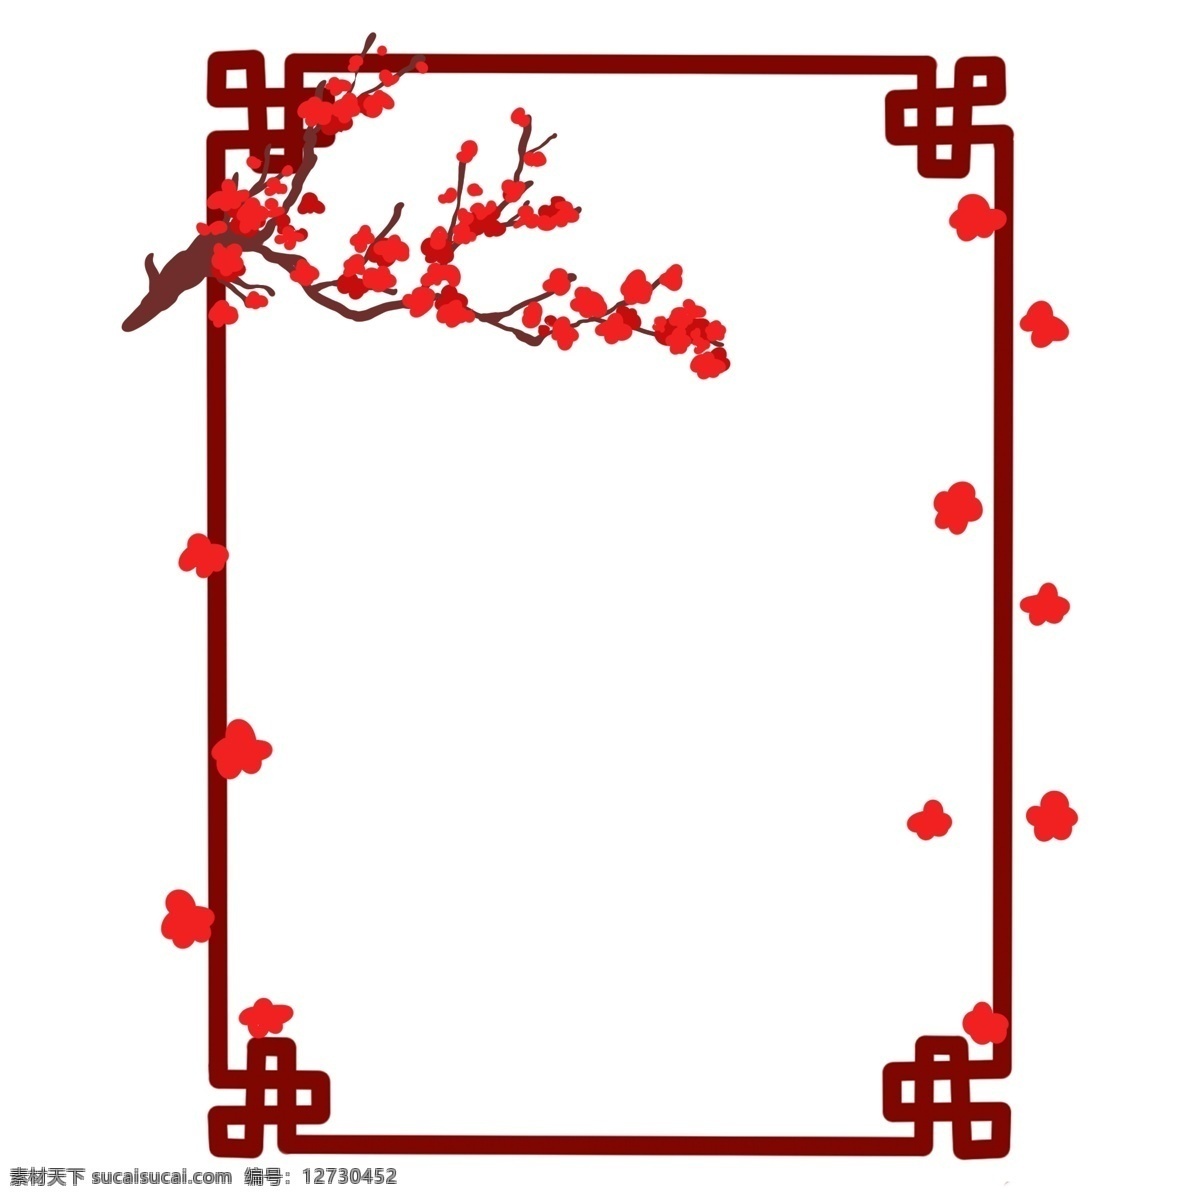 手绘 春节 梅花 边框 红色的边框 红色的梅花 漂亮的边框 美丽的梅花 卡通边框 手绘新年边框